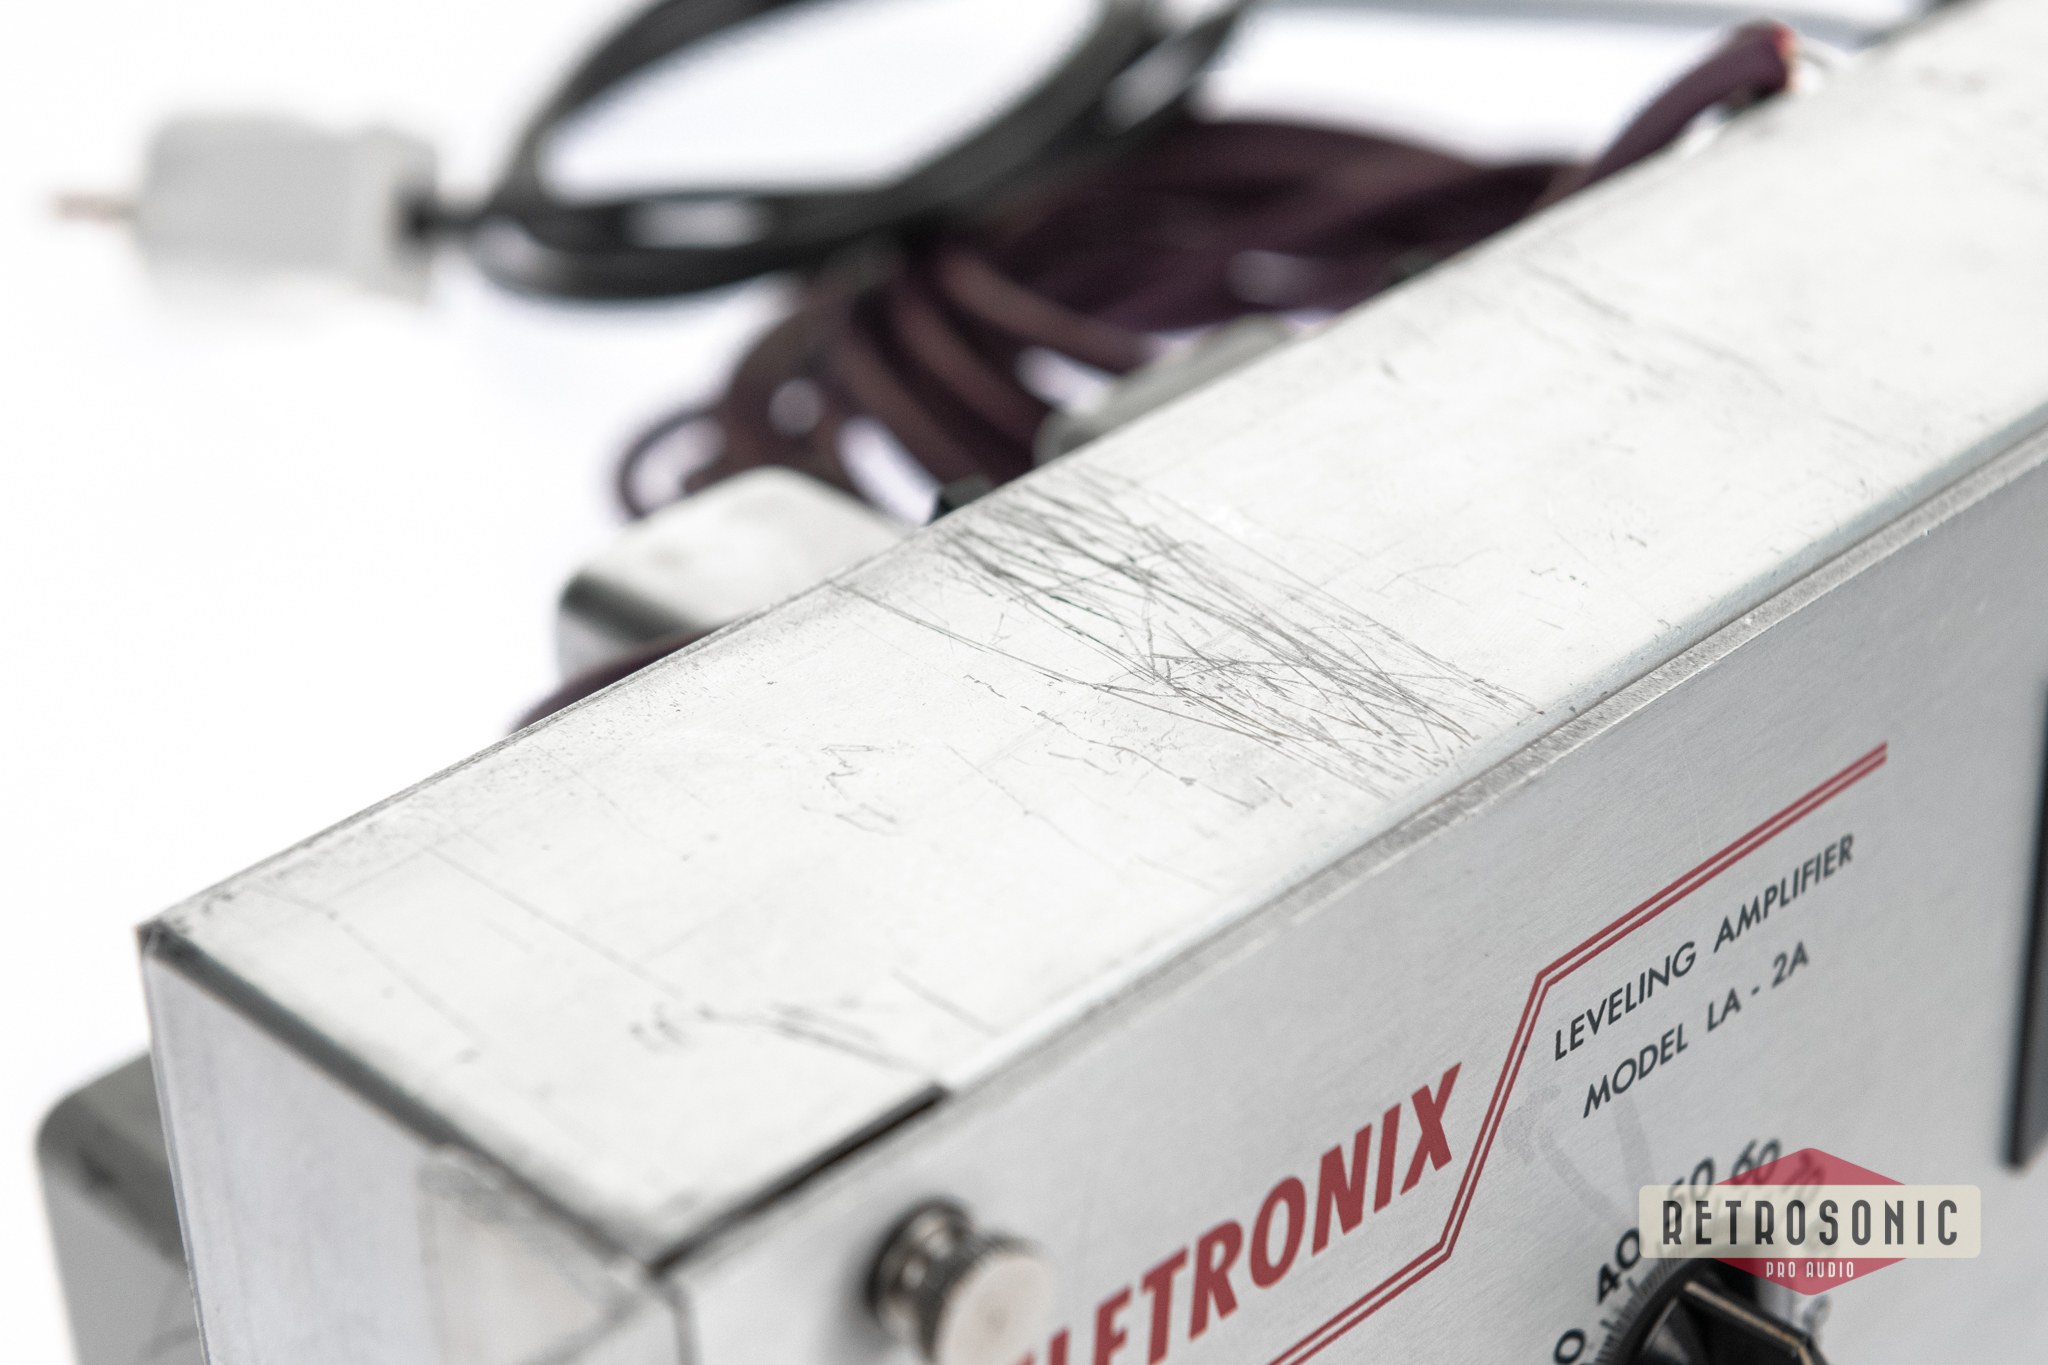 Teletronix LA-2A Leveling Amplifier Revision 2B #1187 Vintage Original 1960s